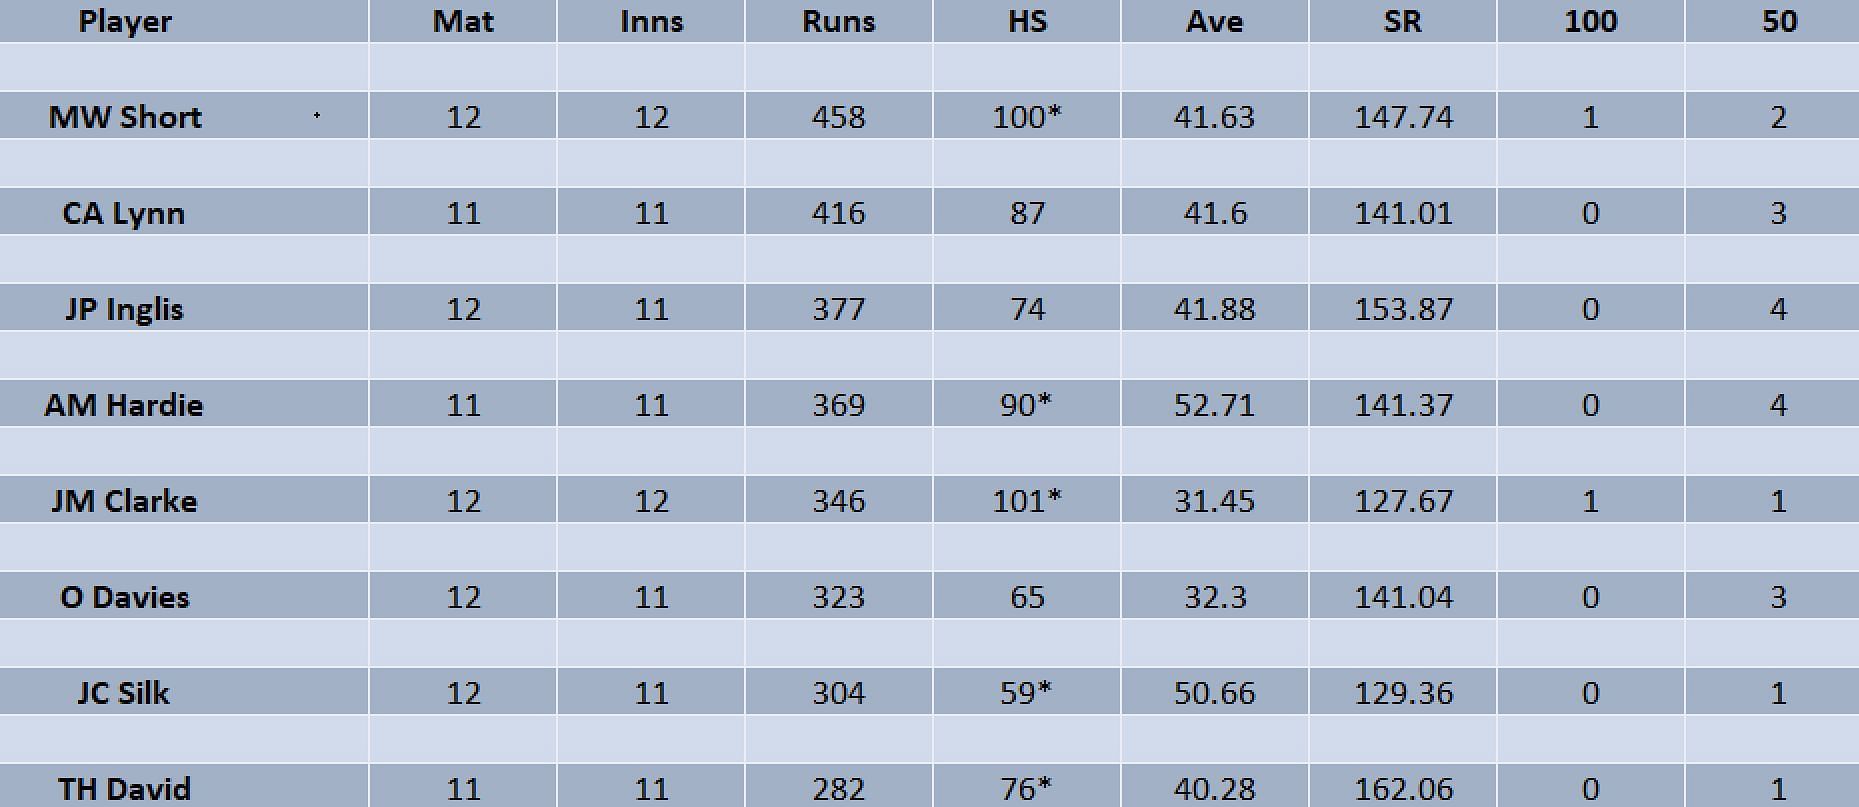 Updated list of run-scorers in BBL 2022-23